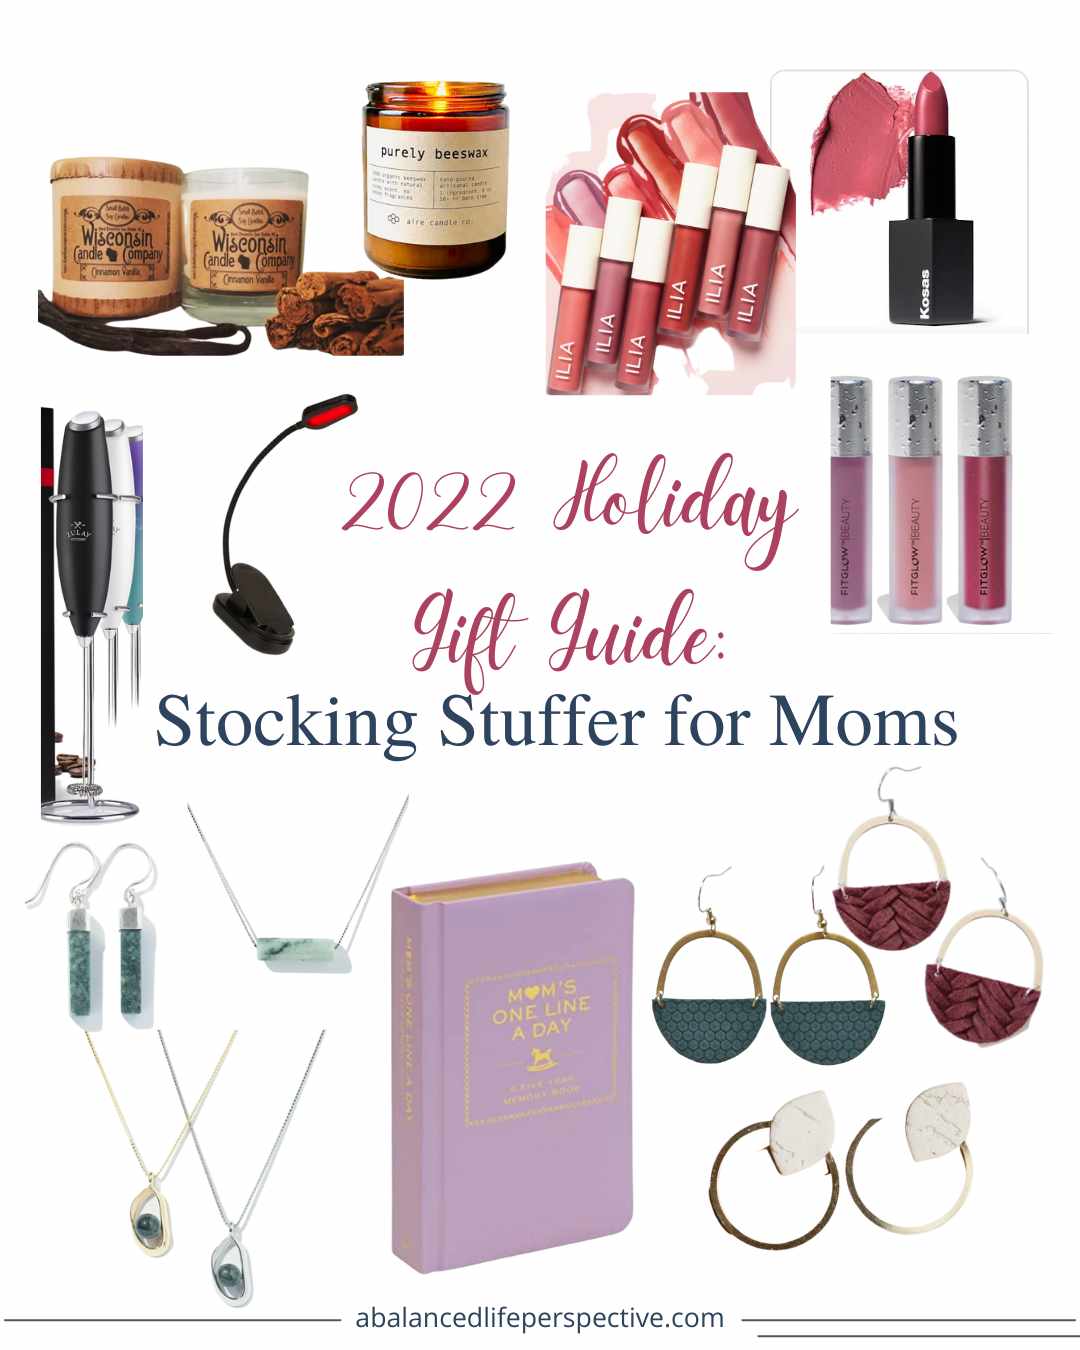 https://abalancedlifeperspective.com/wp-content/uploads/2022/11/Gift-Guide-Stocking-Stuffer-for-Moms.jpg